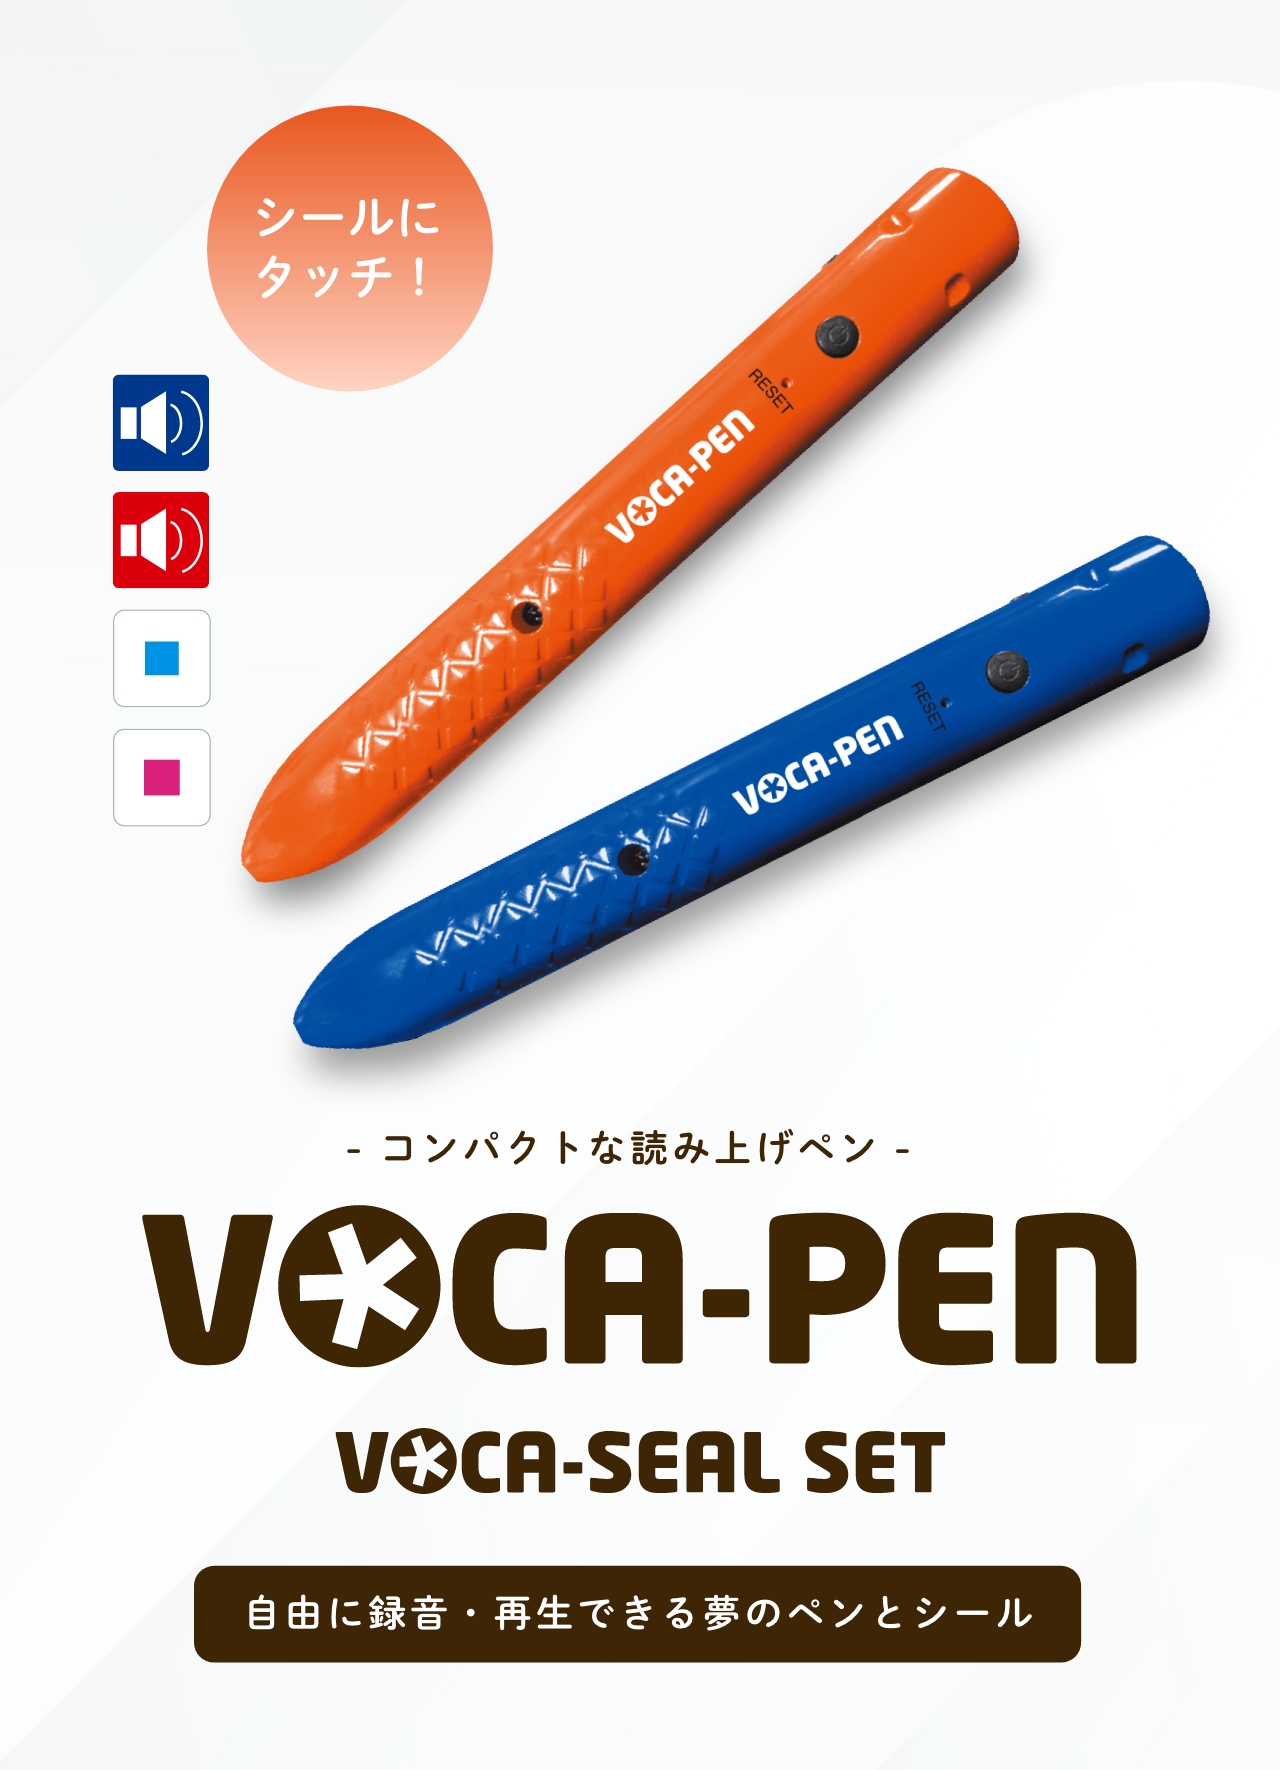 コンパクトな読み上げペン「VOCA-PEN」